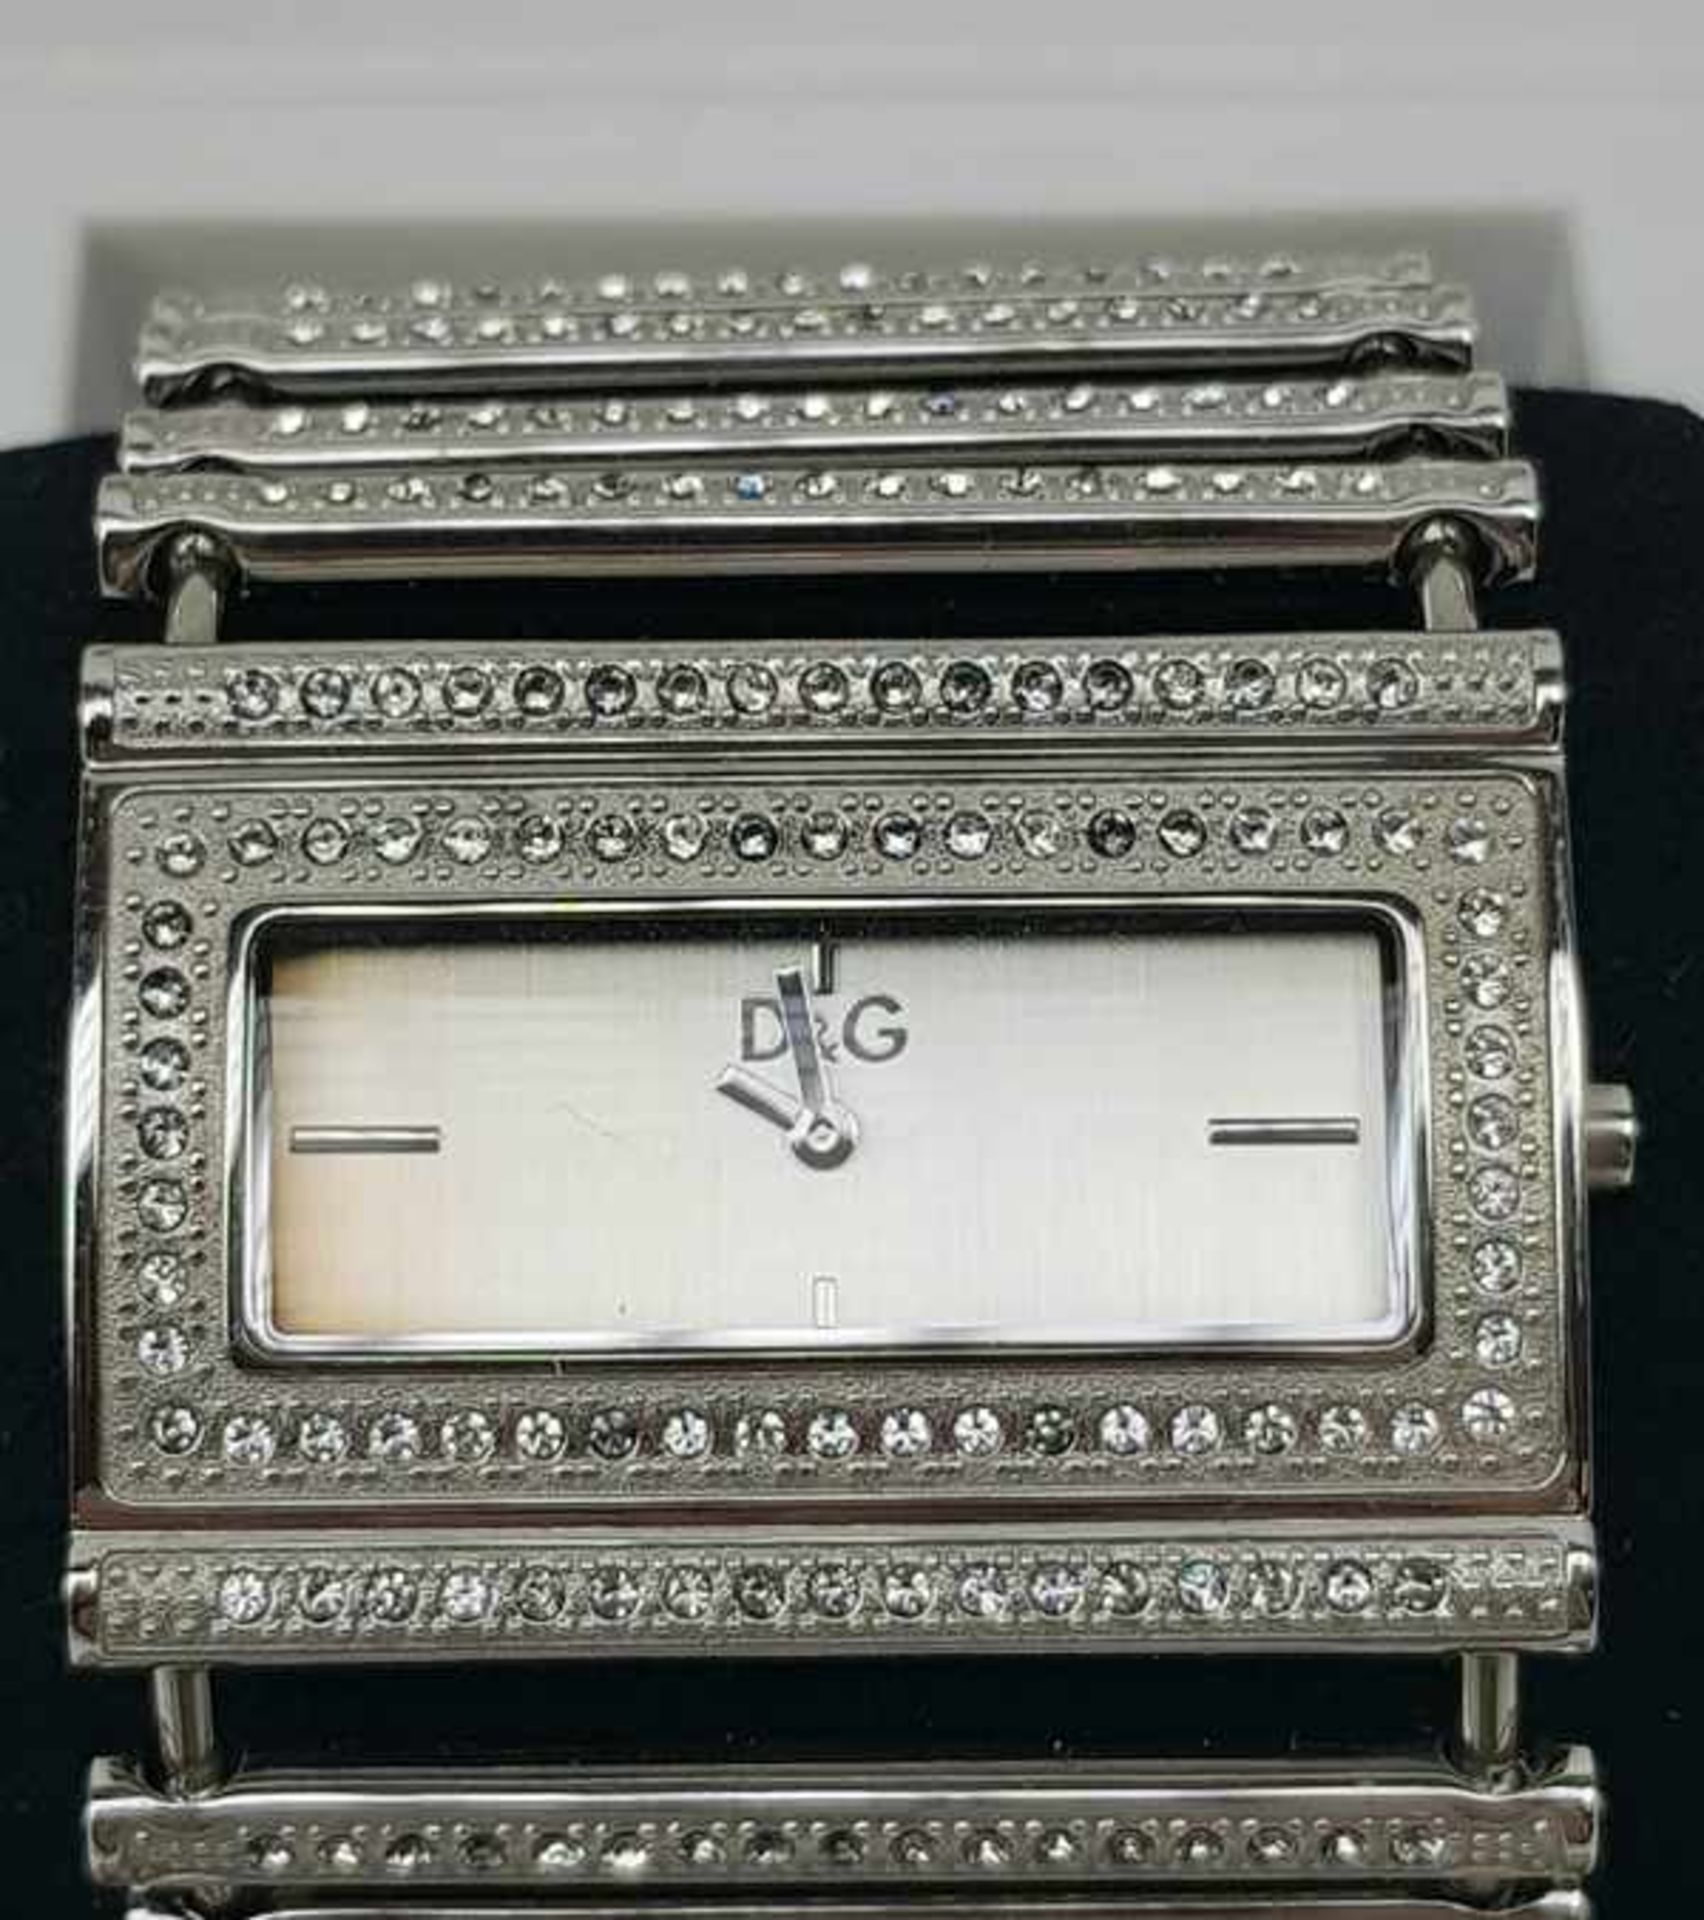 (Design) Dolce & Gabbana horlogeHorloge Dolce & Gabbana in orginele doos. Conditie: Verkleuring - Image 3 of 9